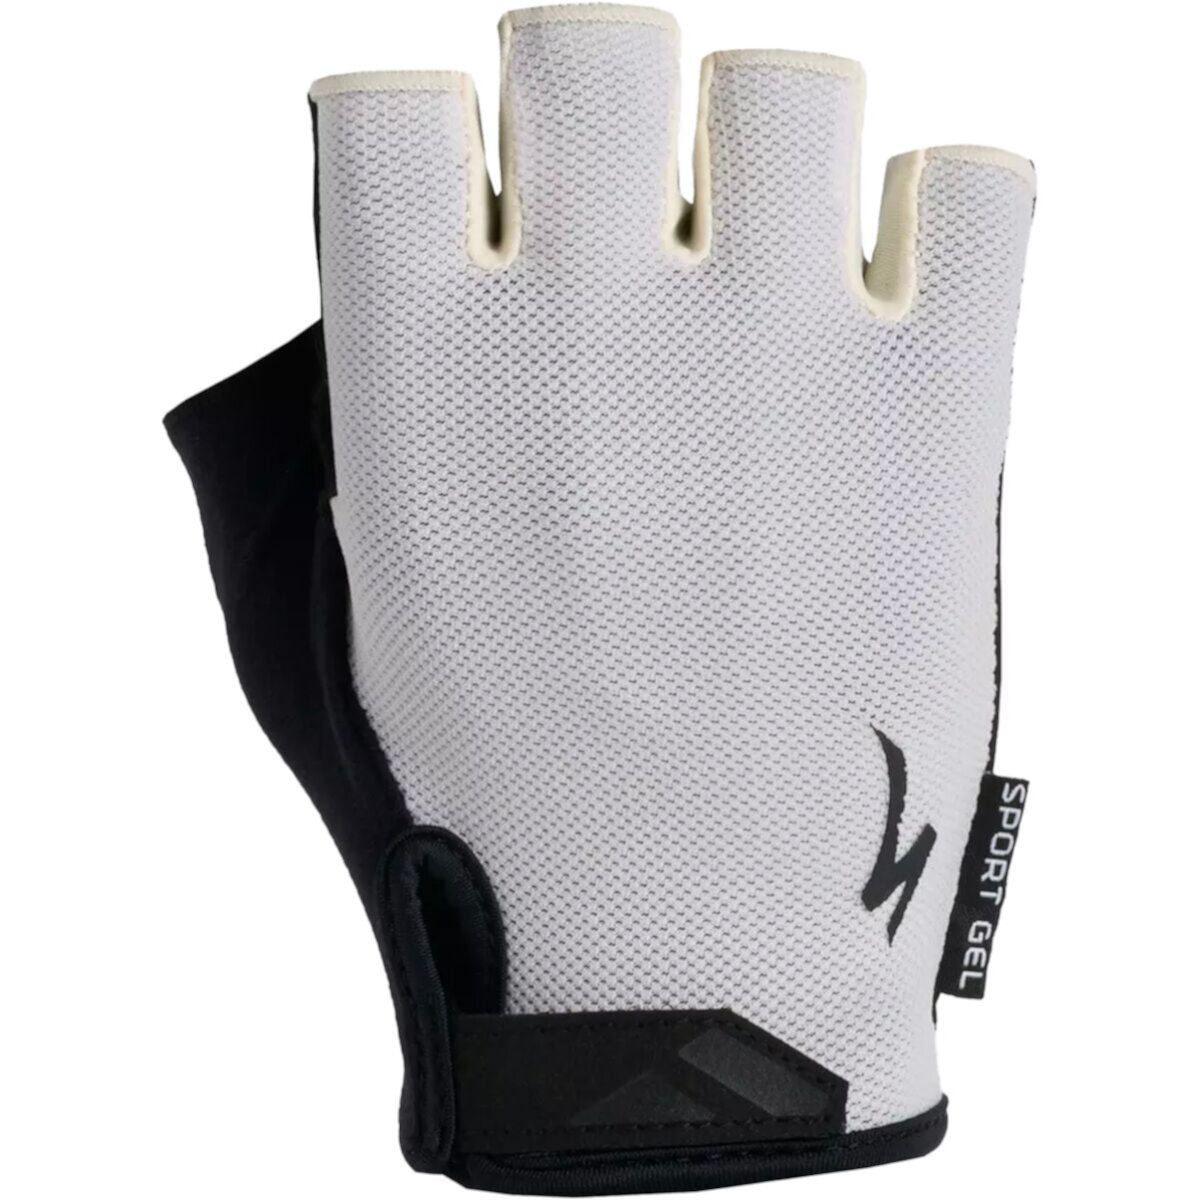 Спортивные гелевые перчатки Specialized Body Geometry для коротких пальцев Specialized